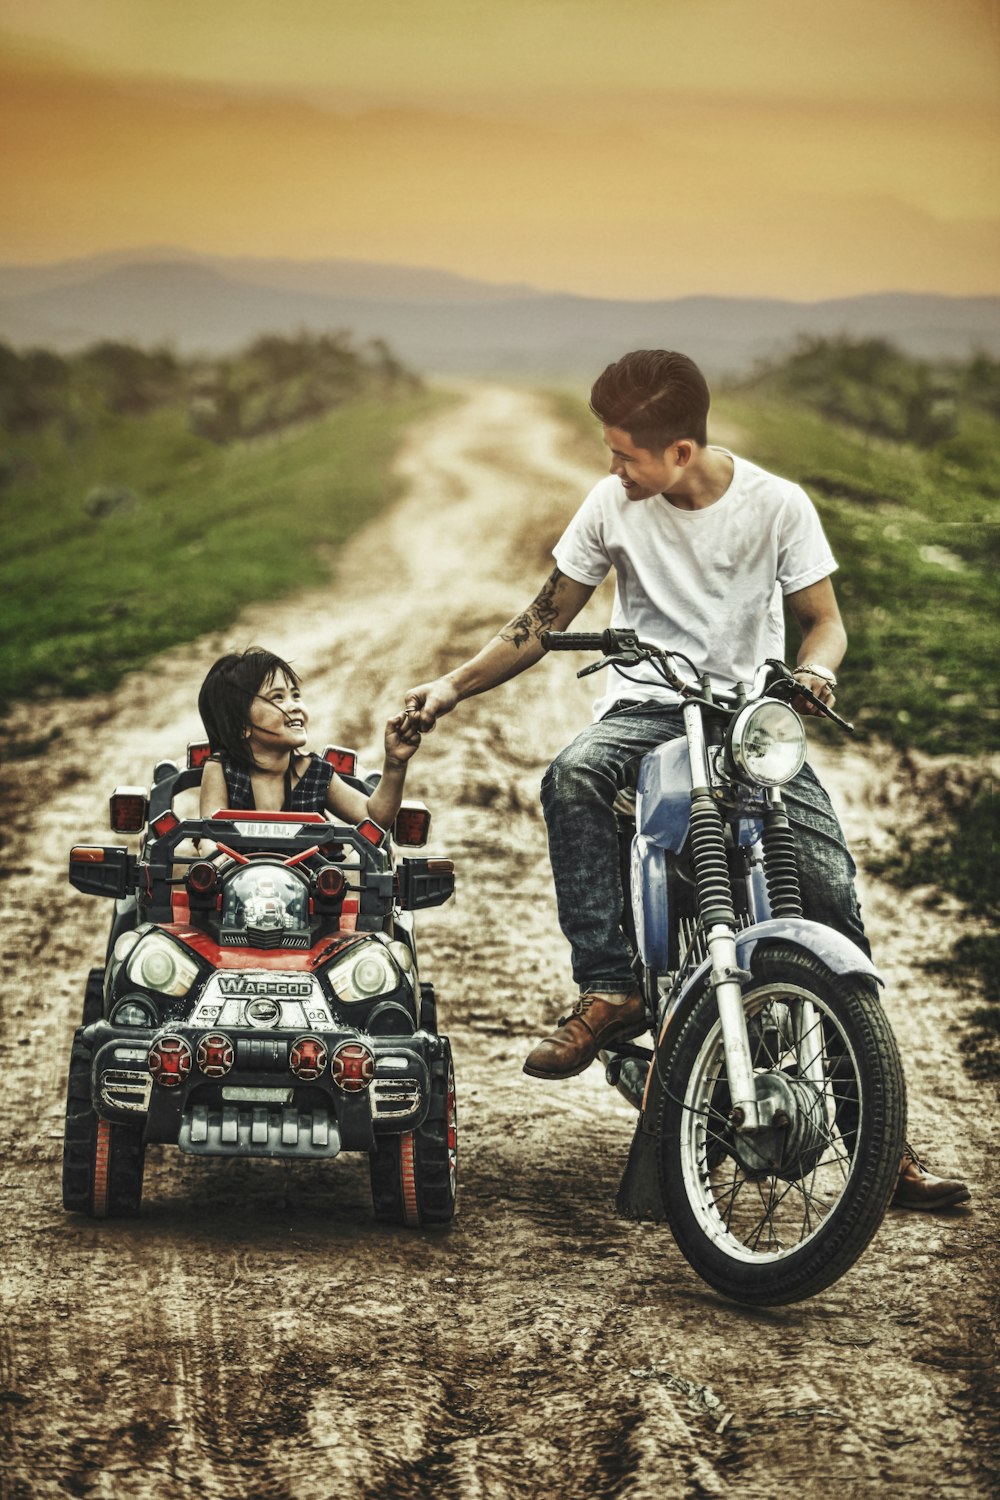 homme conduisant une moto et un enfant en bas âge sur une voiture jouet dans une route pendant la journée